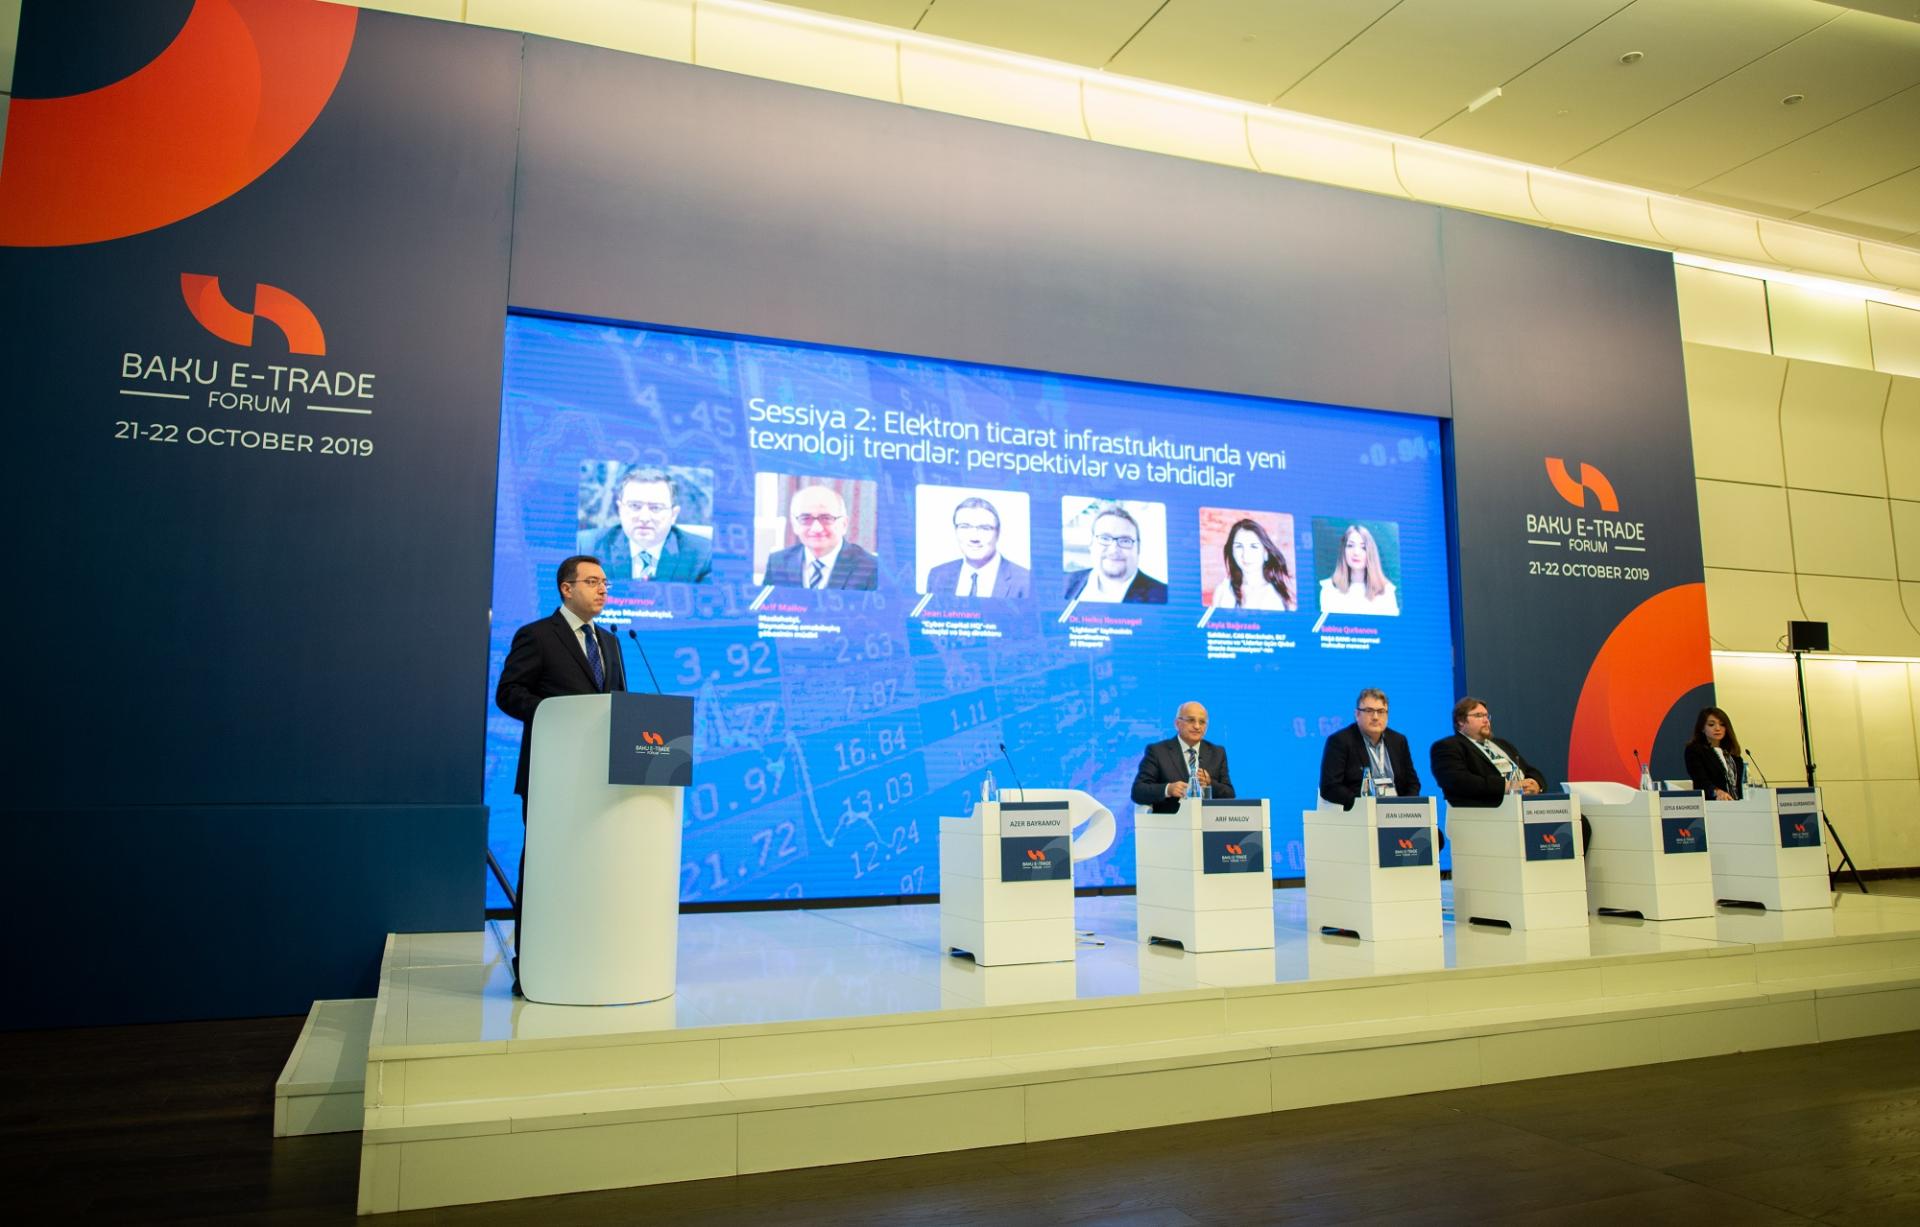 Программа “Azerbaijan Digital HUB” была представлена на “Eurasia Innovation Day” (ФОТО)